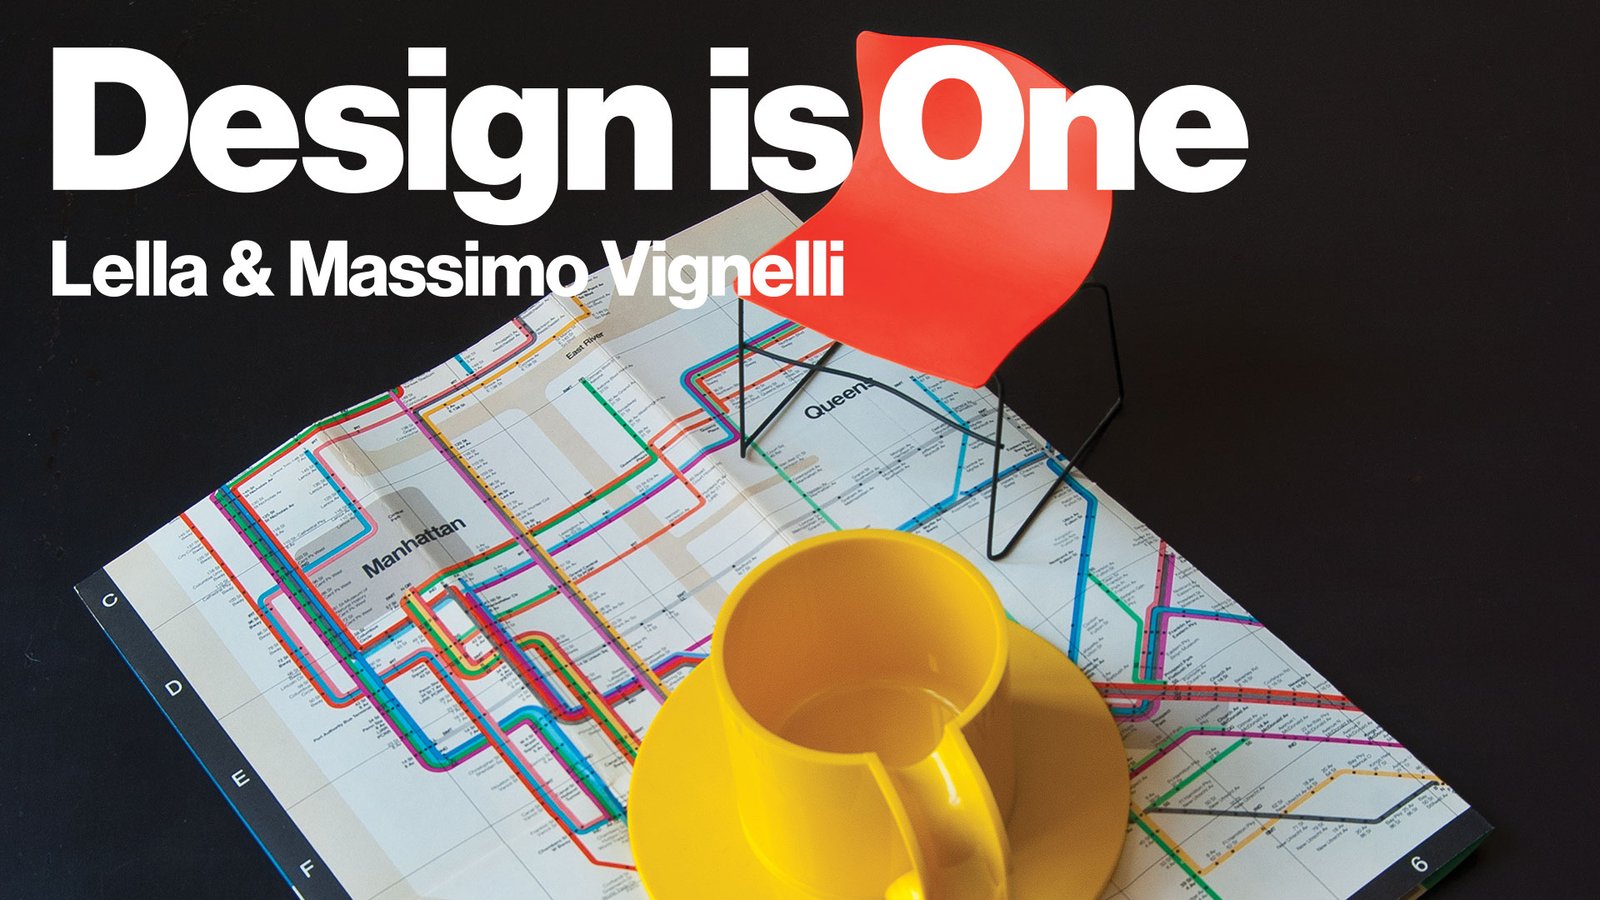 Design is One - Designers Lella & Massimo Vignelli